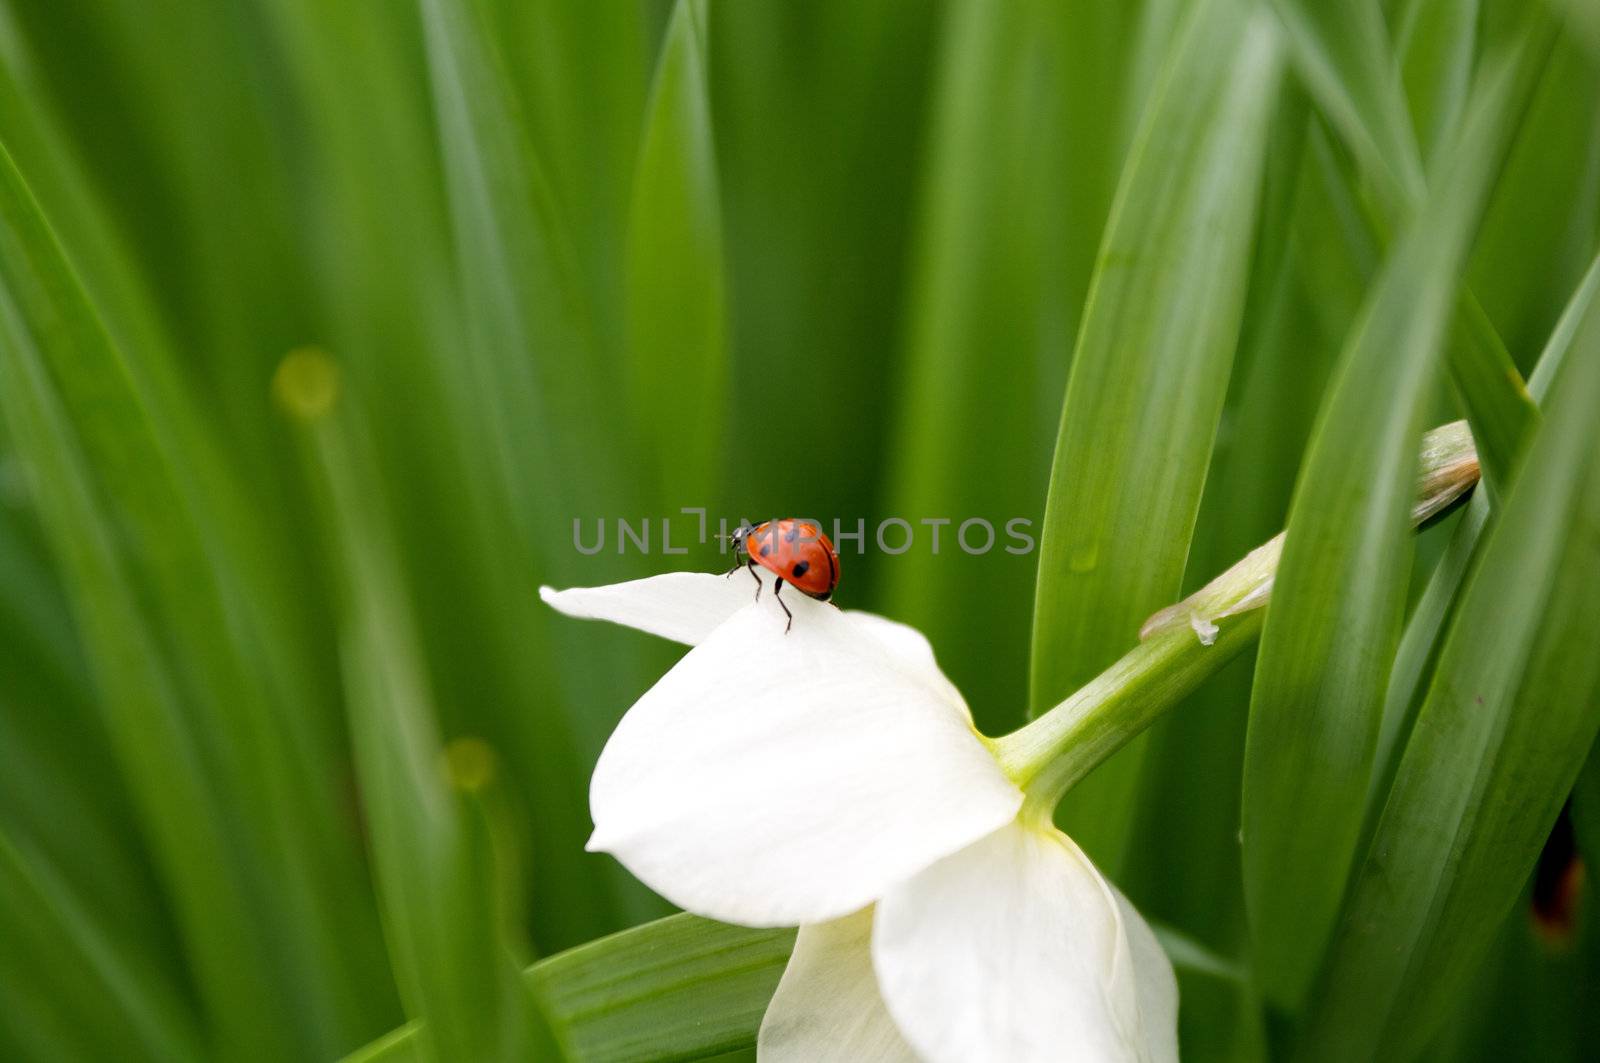 Ladybug on beautiful narcissus flower by zhekos